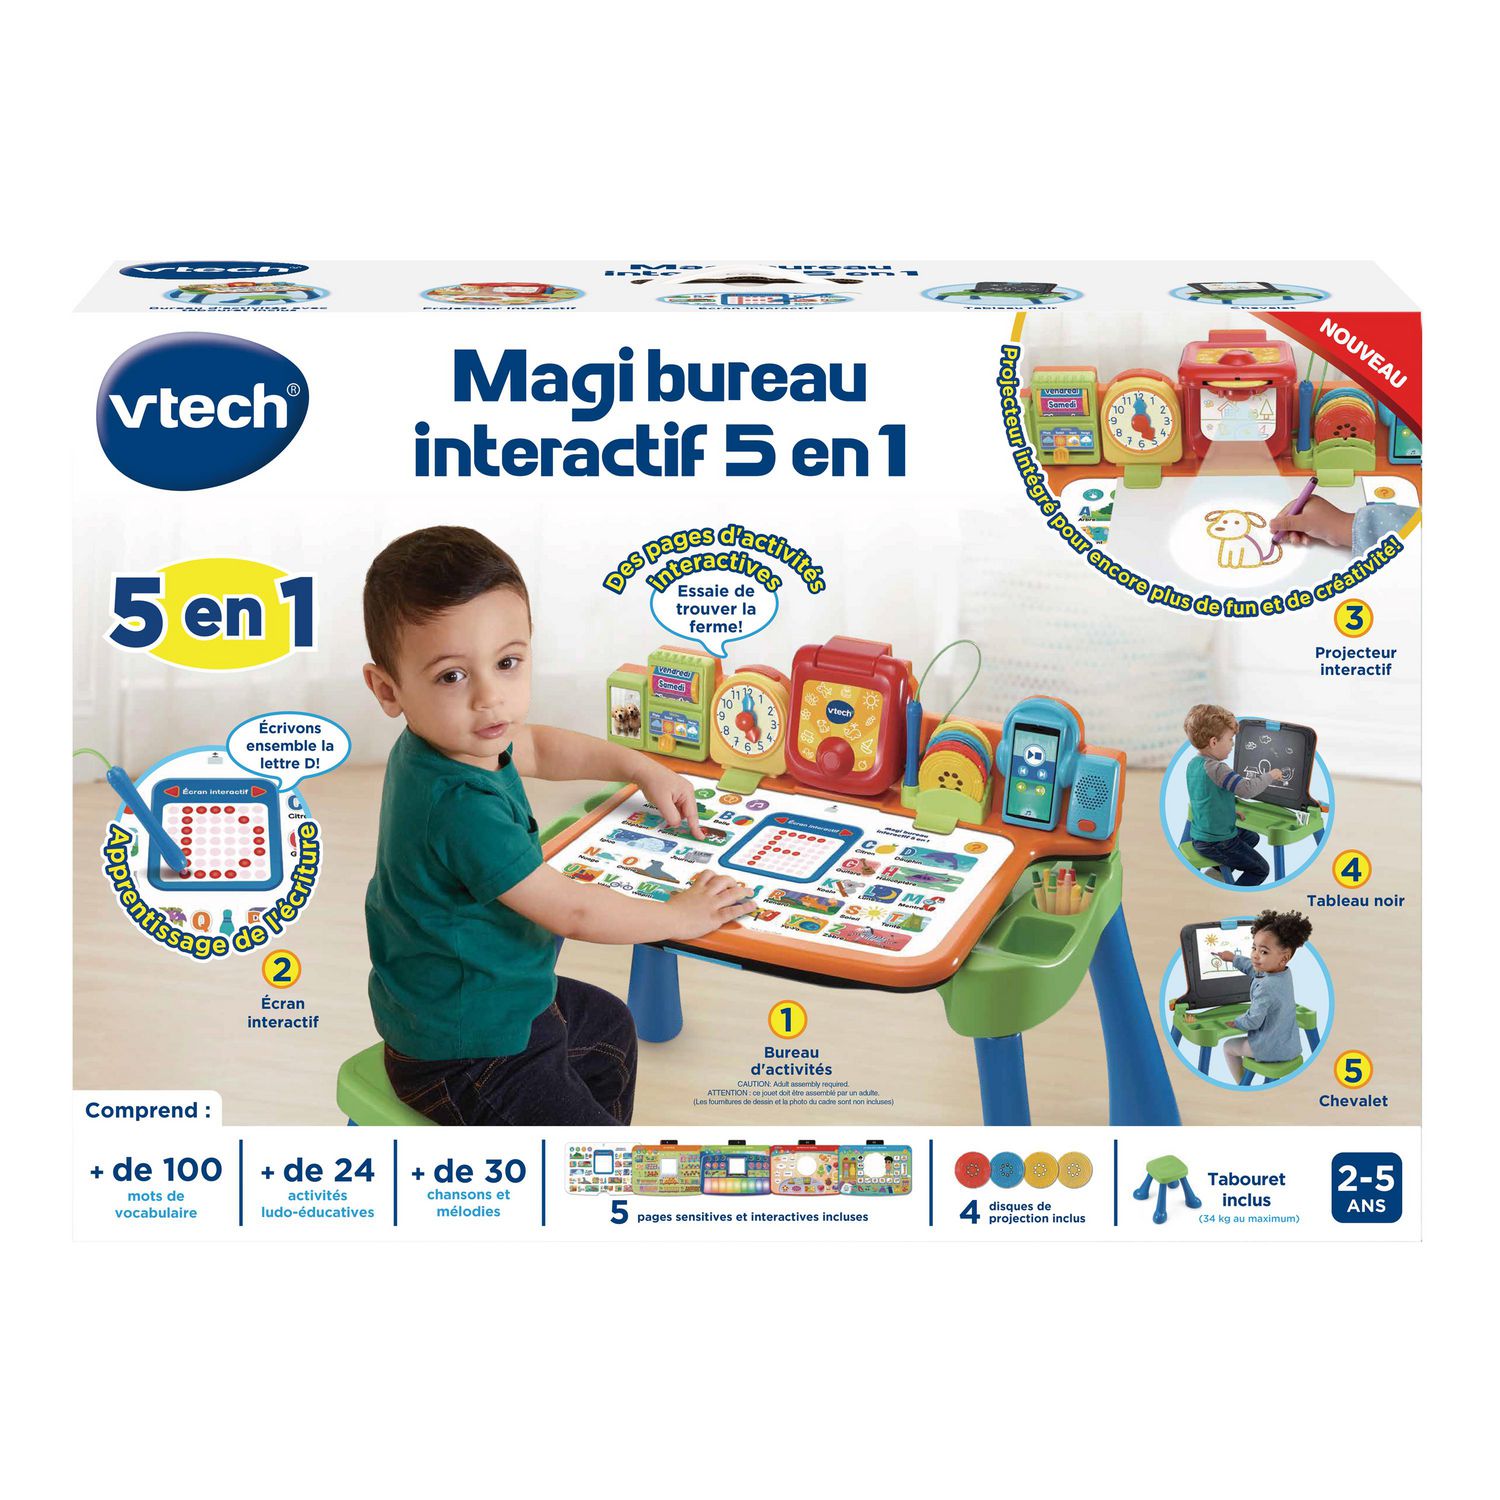 VTech Magi bureau interactif 5 en 1 - Exclusive de Walmart - Version  française 2 à 5 ans 